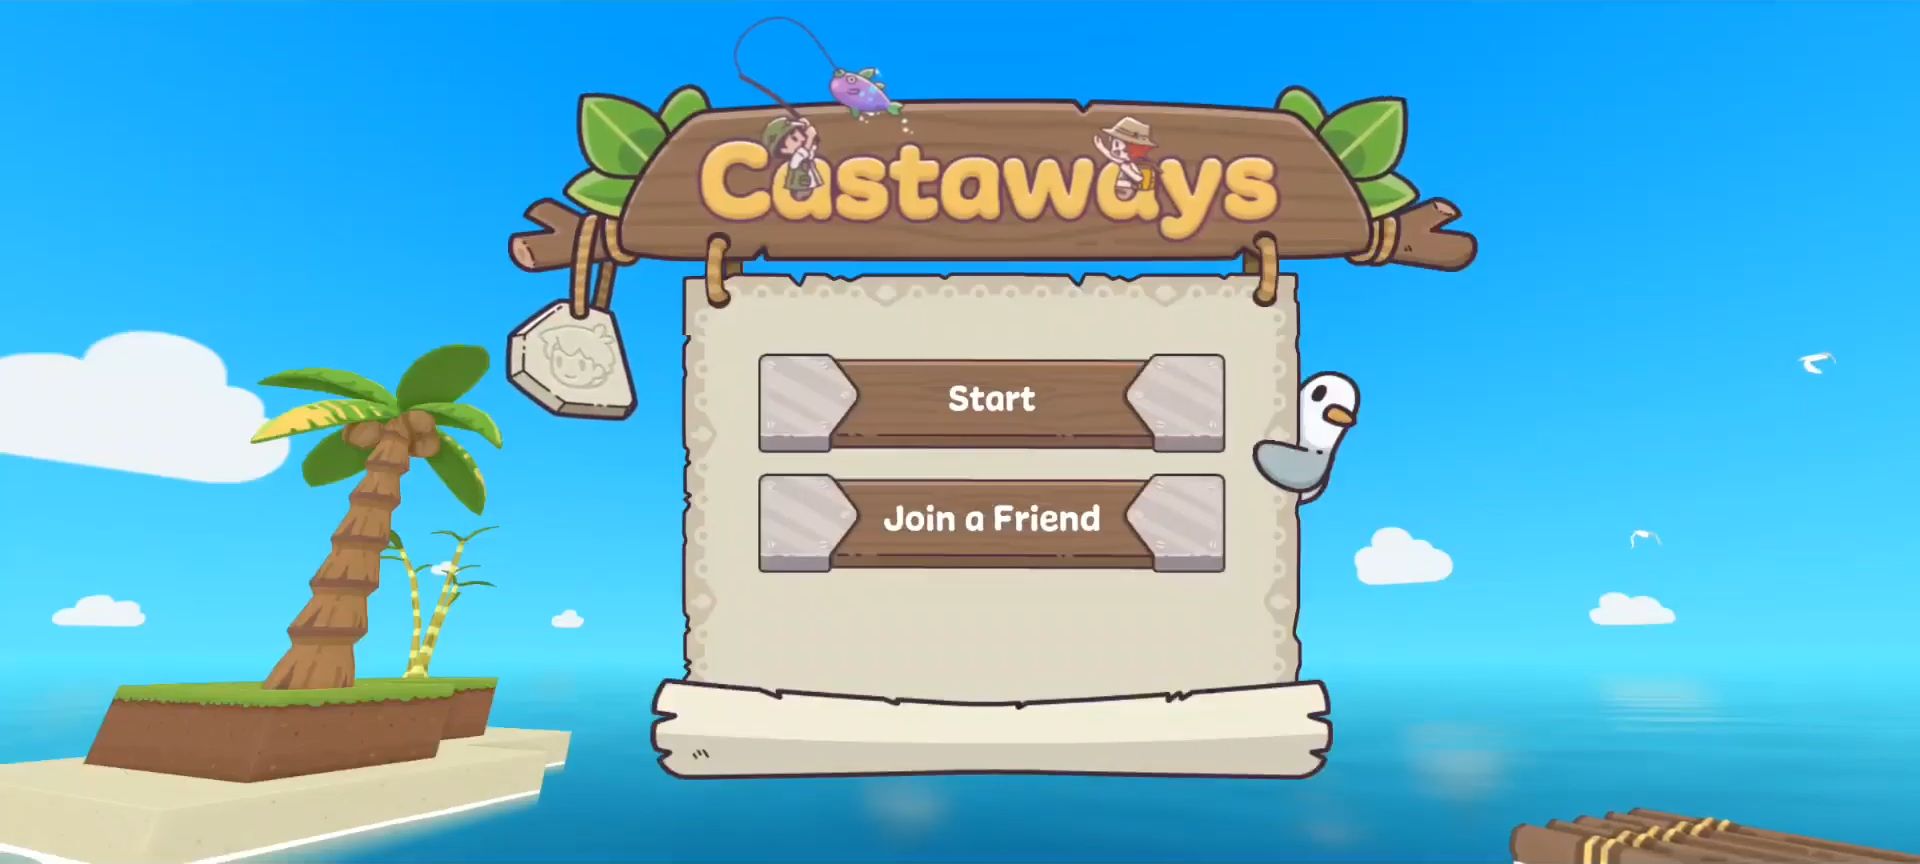 Download Castaways für Android kostenlos.